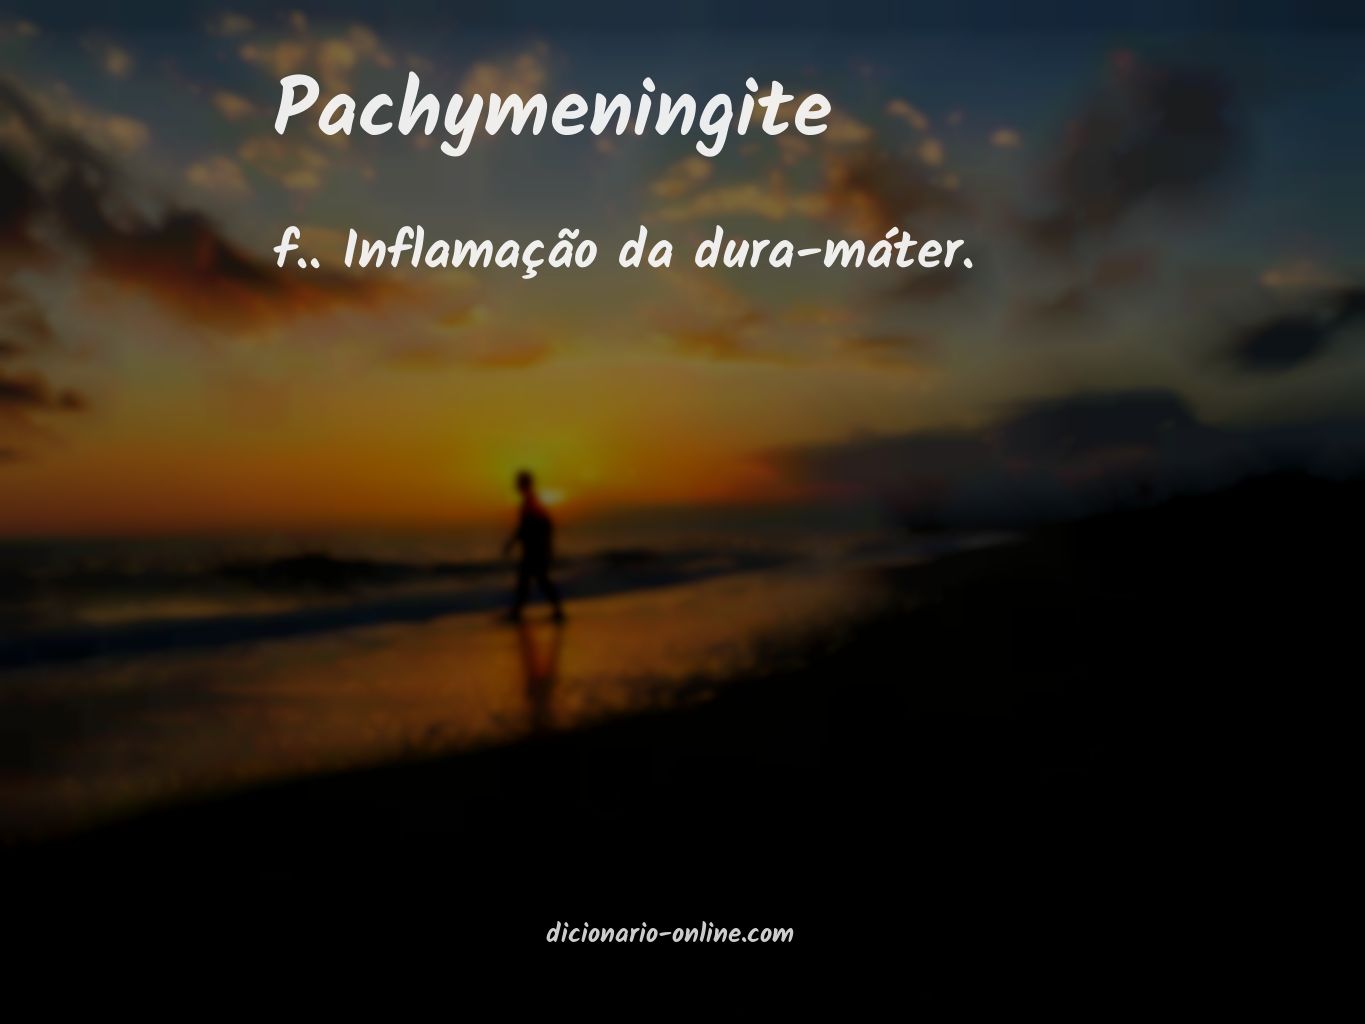 Significado de pachymeningite